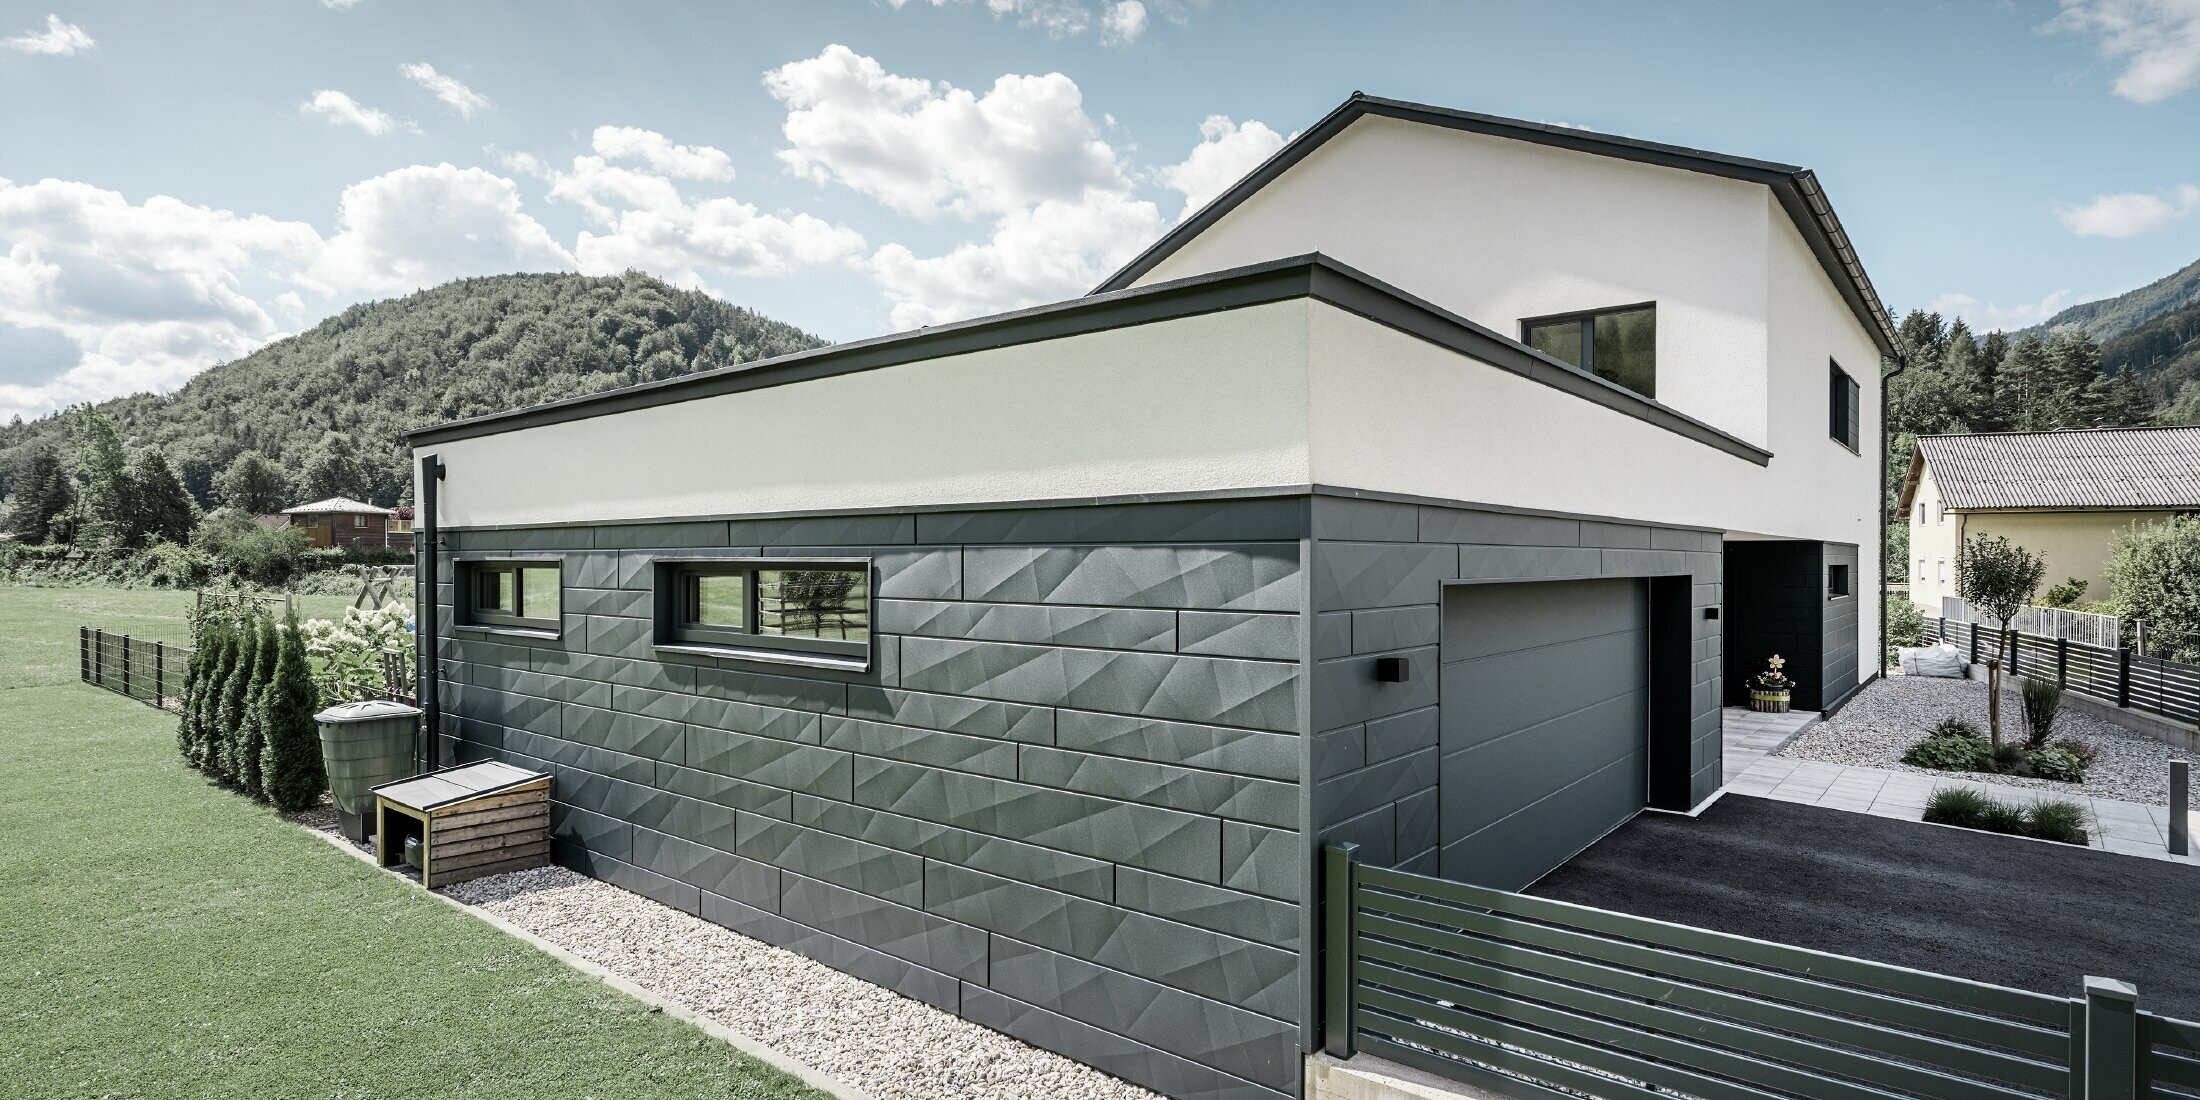 Maison individuelle moderne et garage avec façade en Siding.X couleur P.10 anthracite. Elle est située dans un environnement rural.